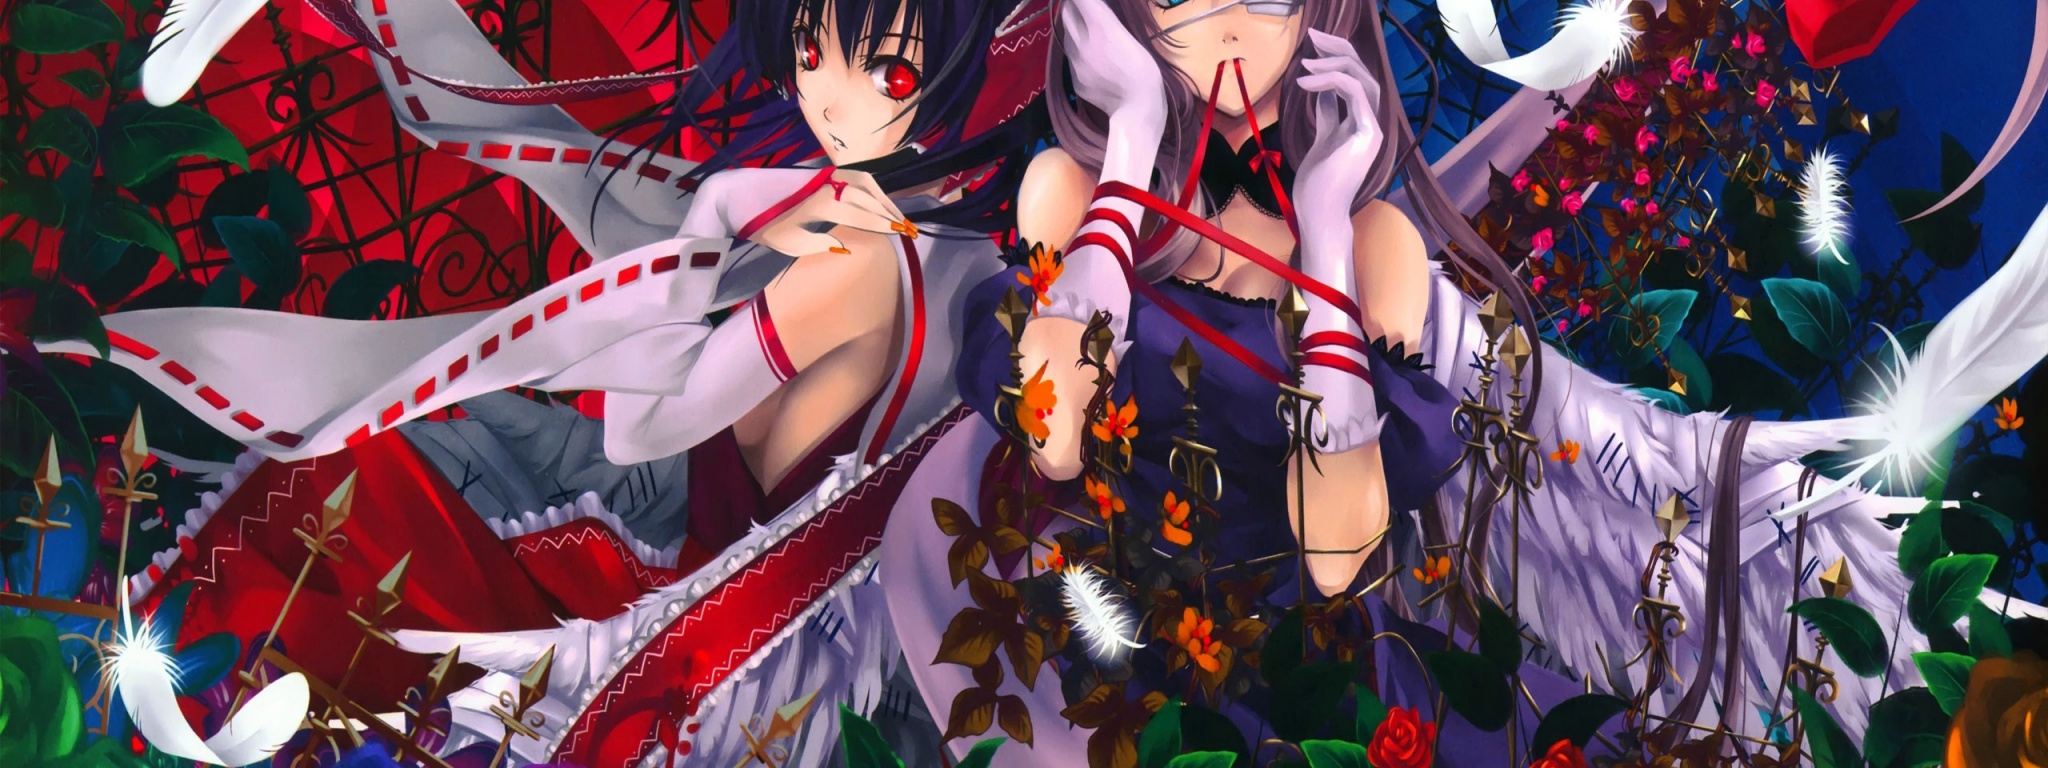 Reimu And Yukari Roses Feathers Anime